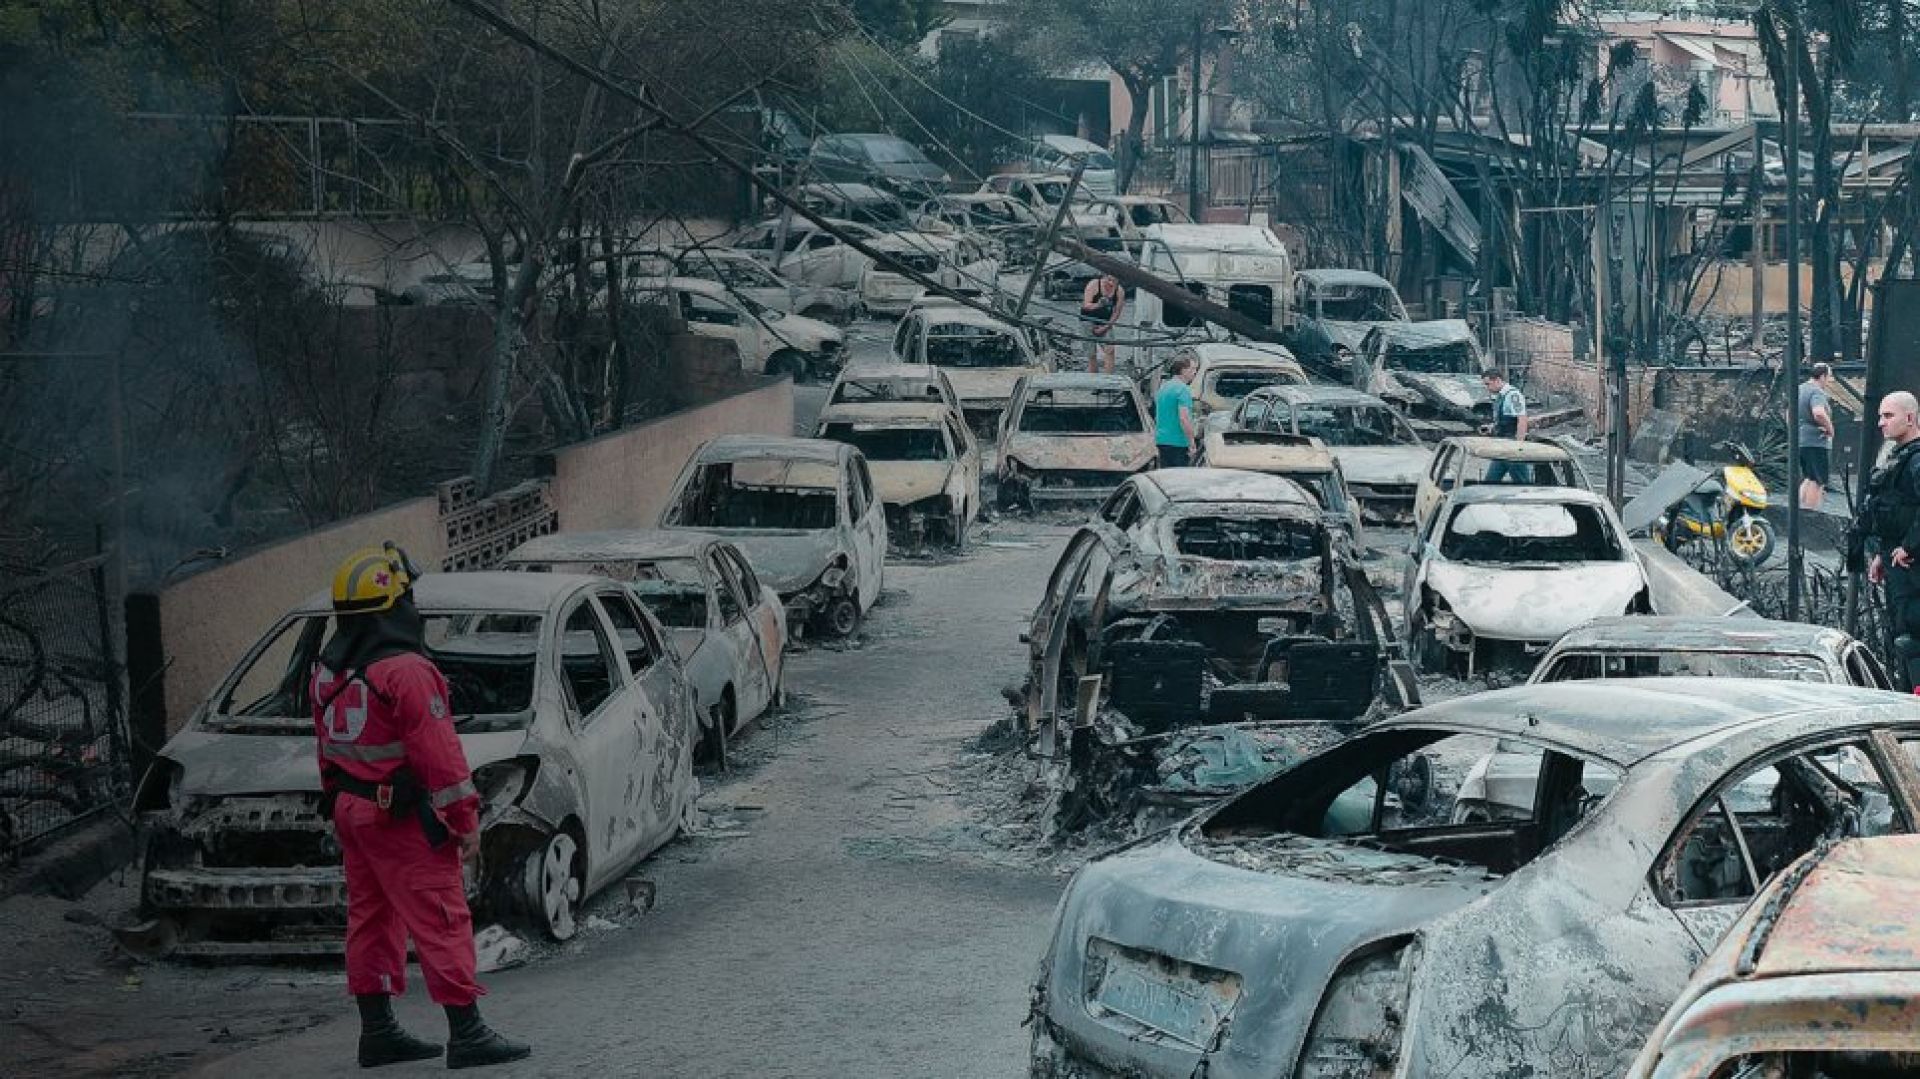 Πυρκαγιές στο Μάτι: Πώς από την ασφαλή εκκένωση των 57 λεπτών καταλήξαμε στην ανείπωτη τραγωδία των 99 θανάτων